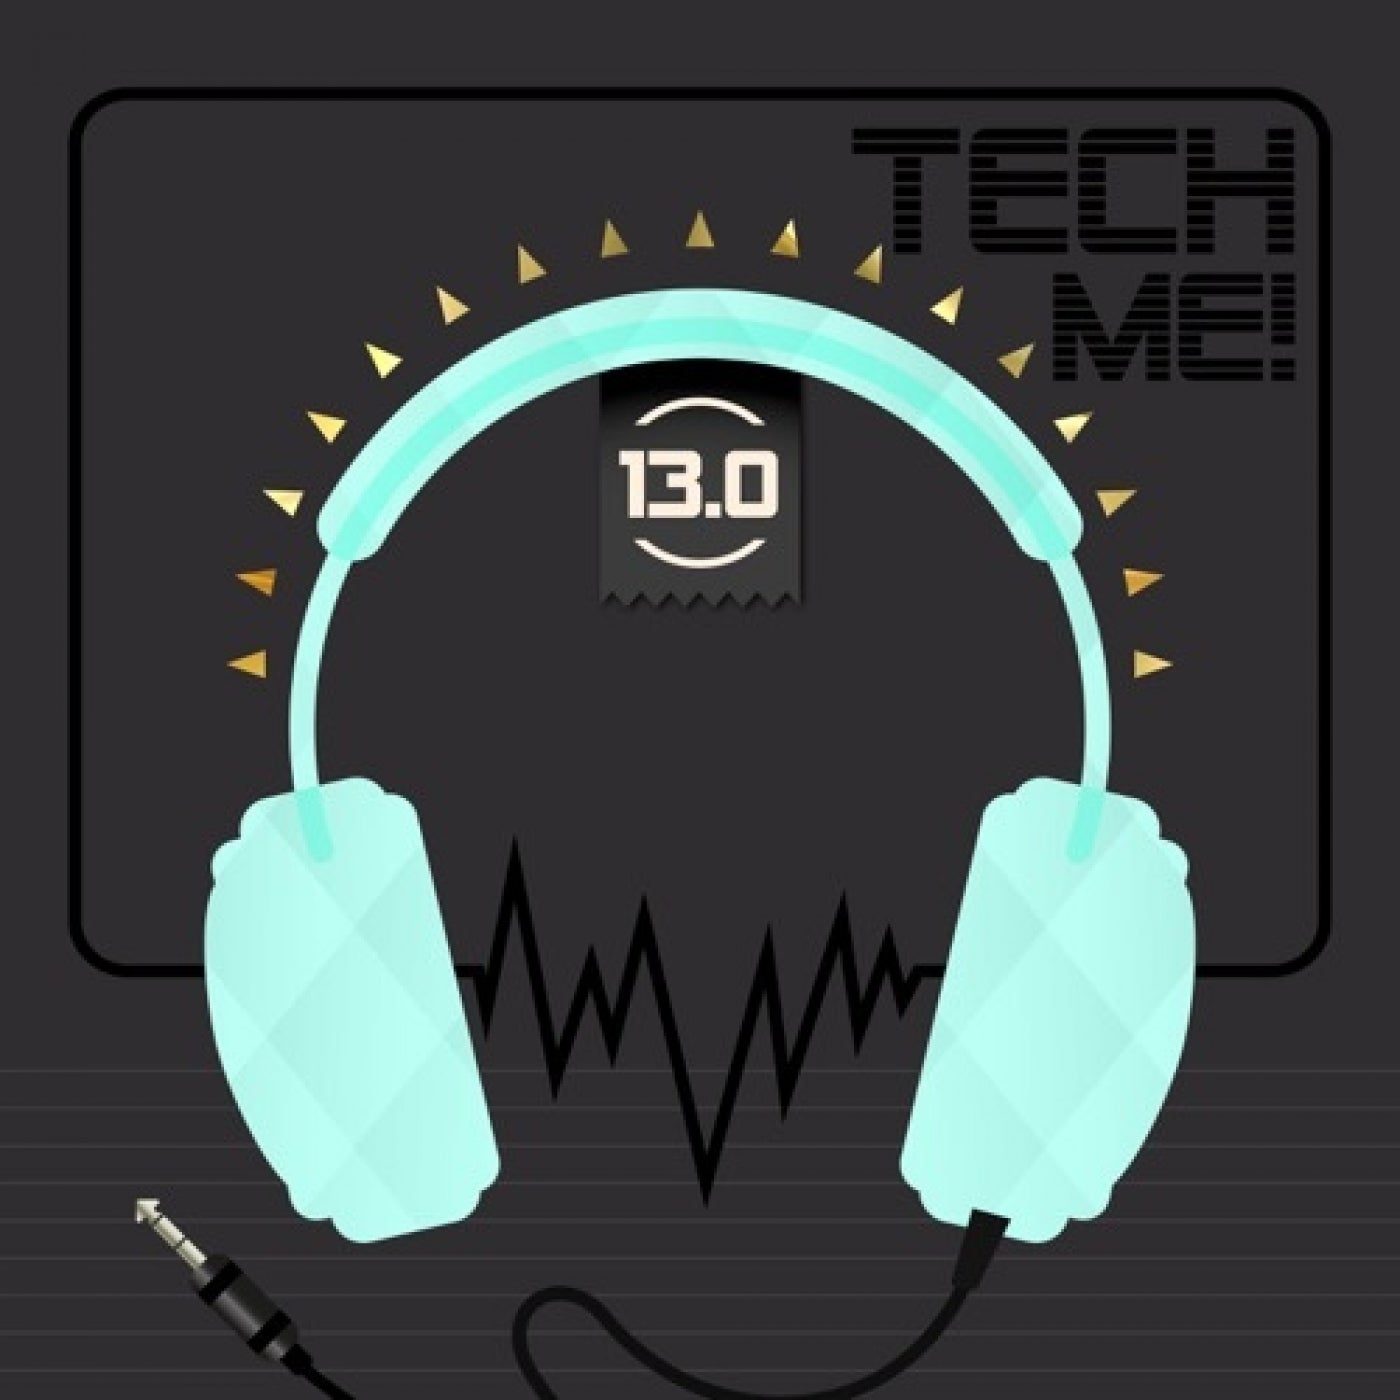 Tech Me! 13.0